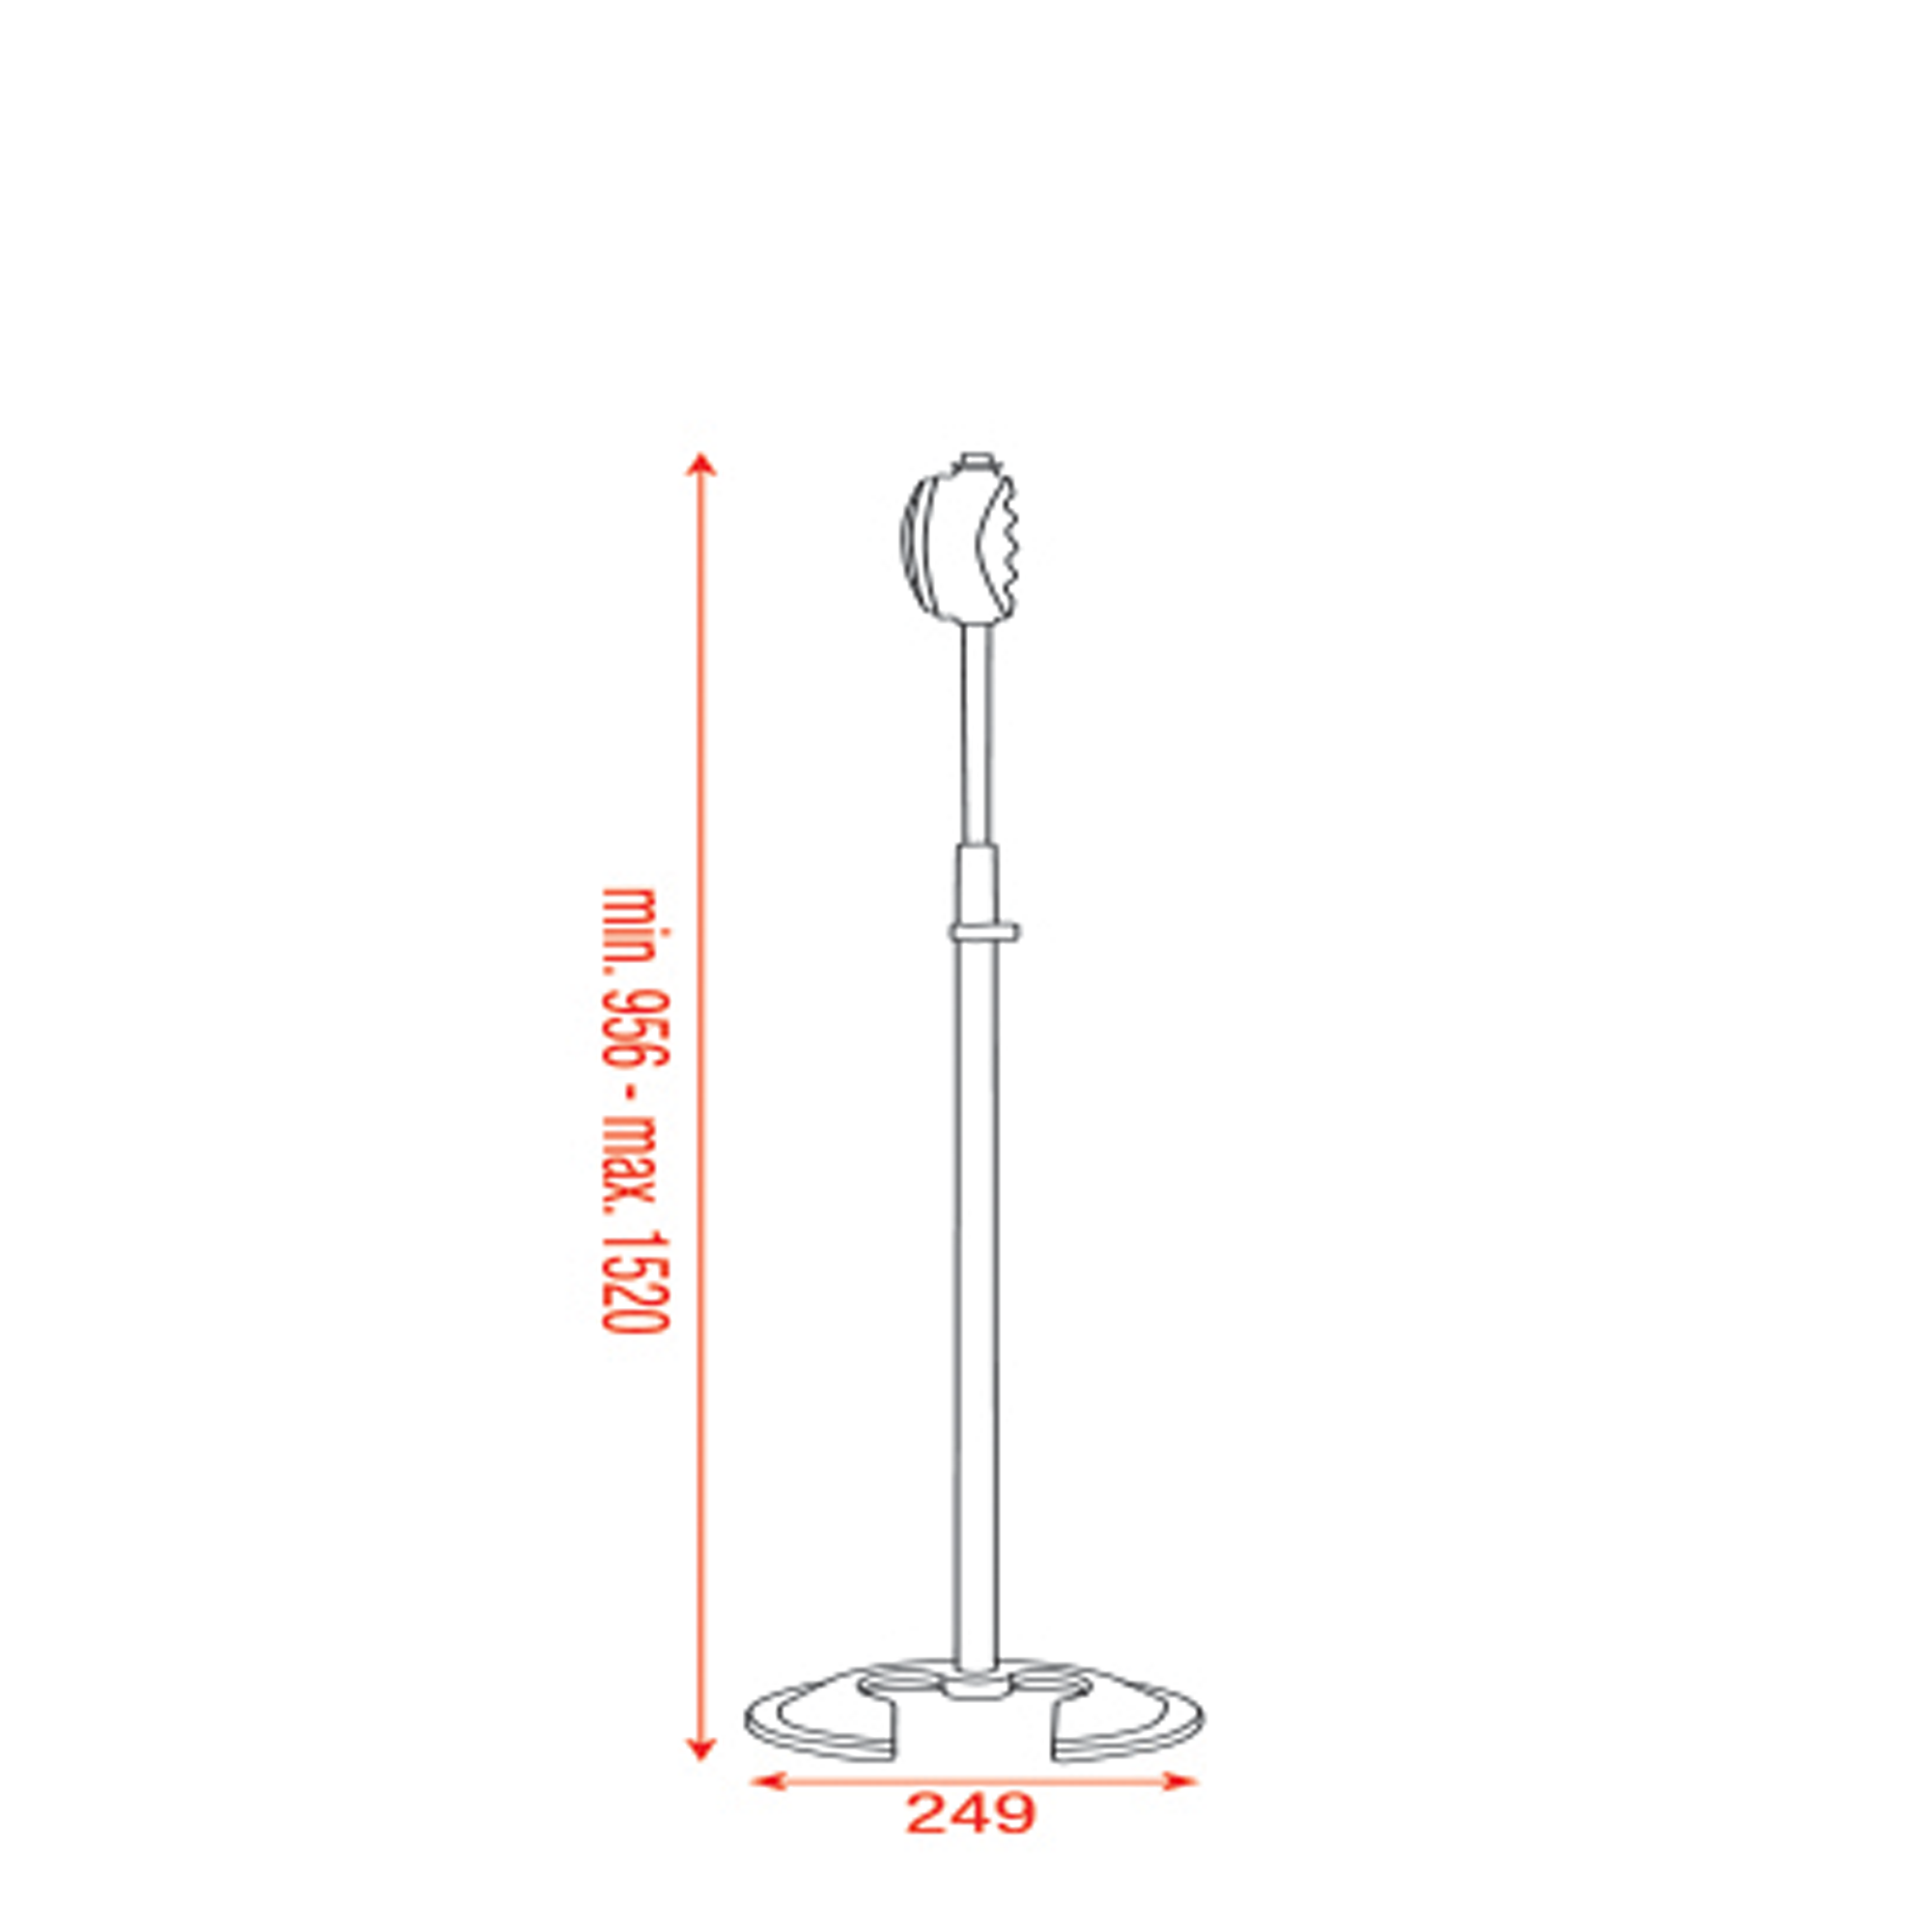 Showgear Microphone Pole - Quick Lock mit Gegengewicht